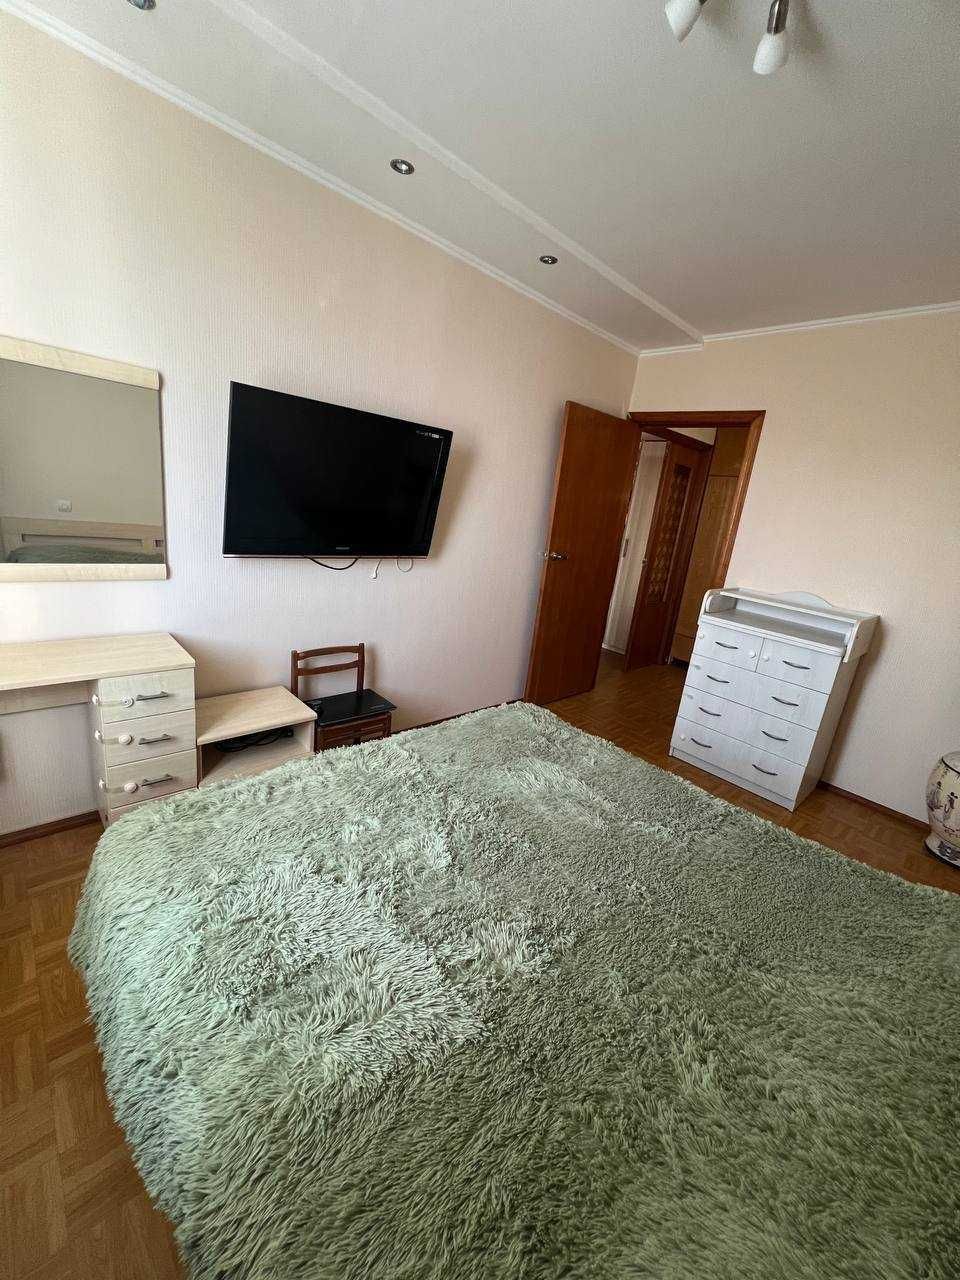 Продам двухкомнатную квартиру на ул. Лазурная г. Черноморск.